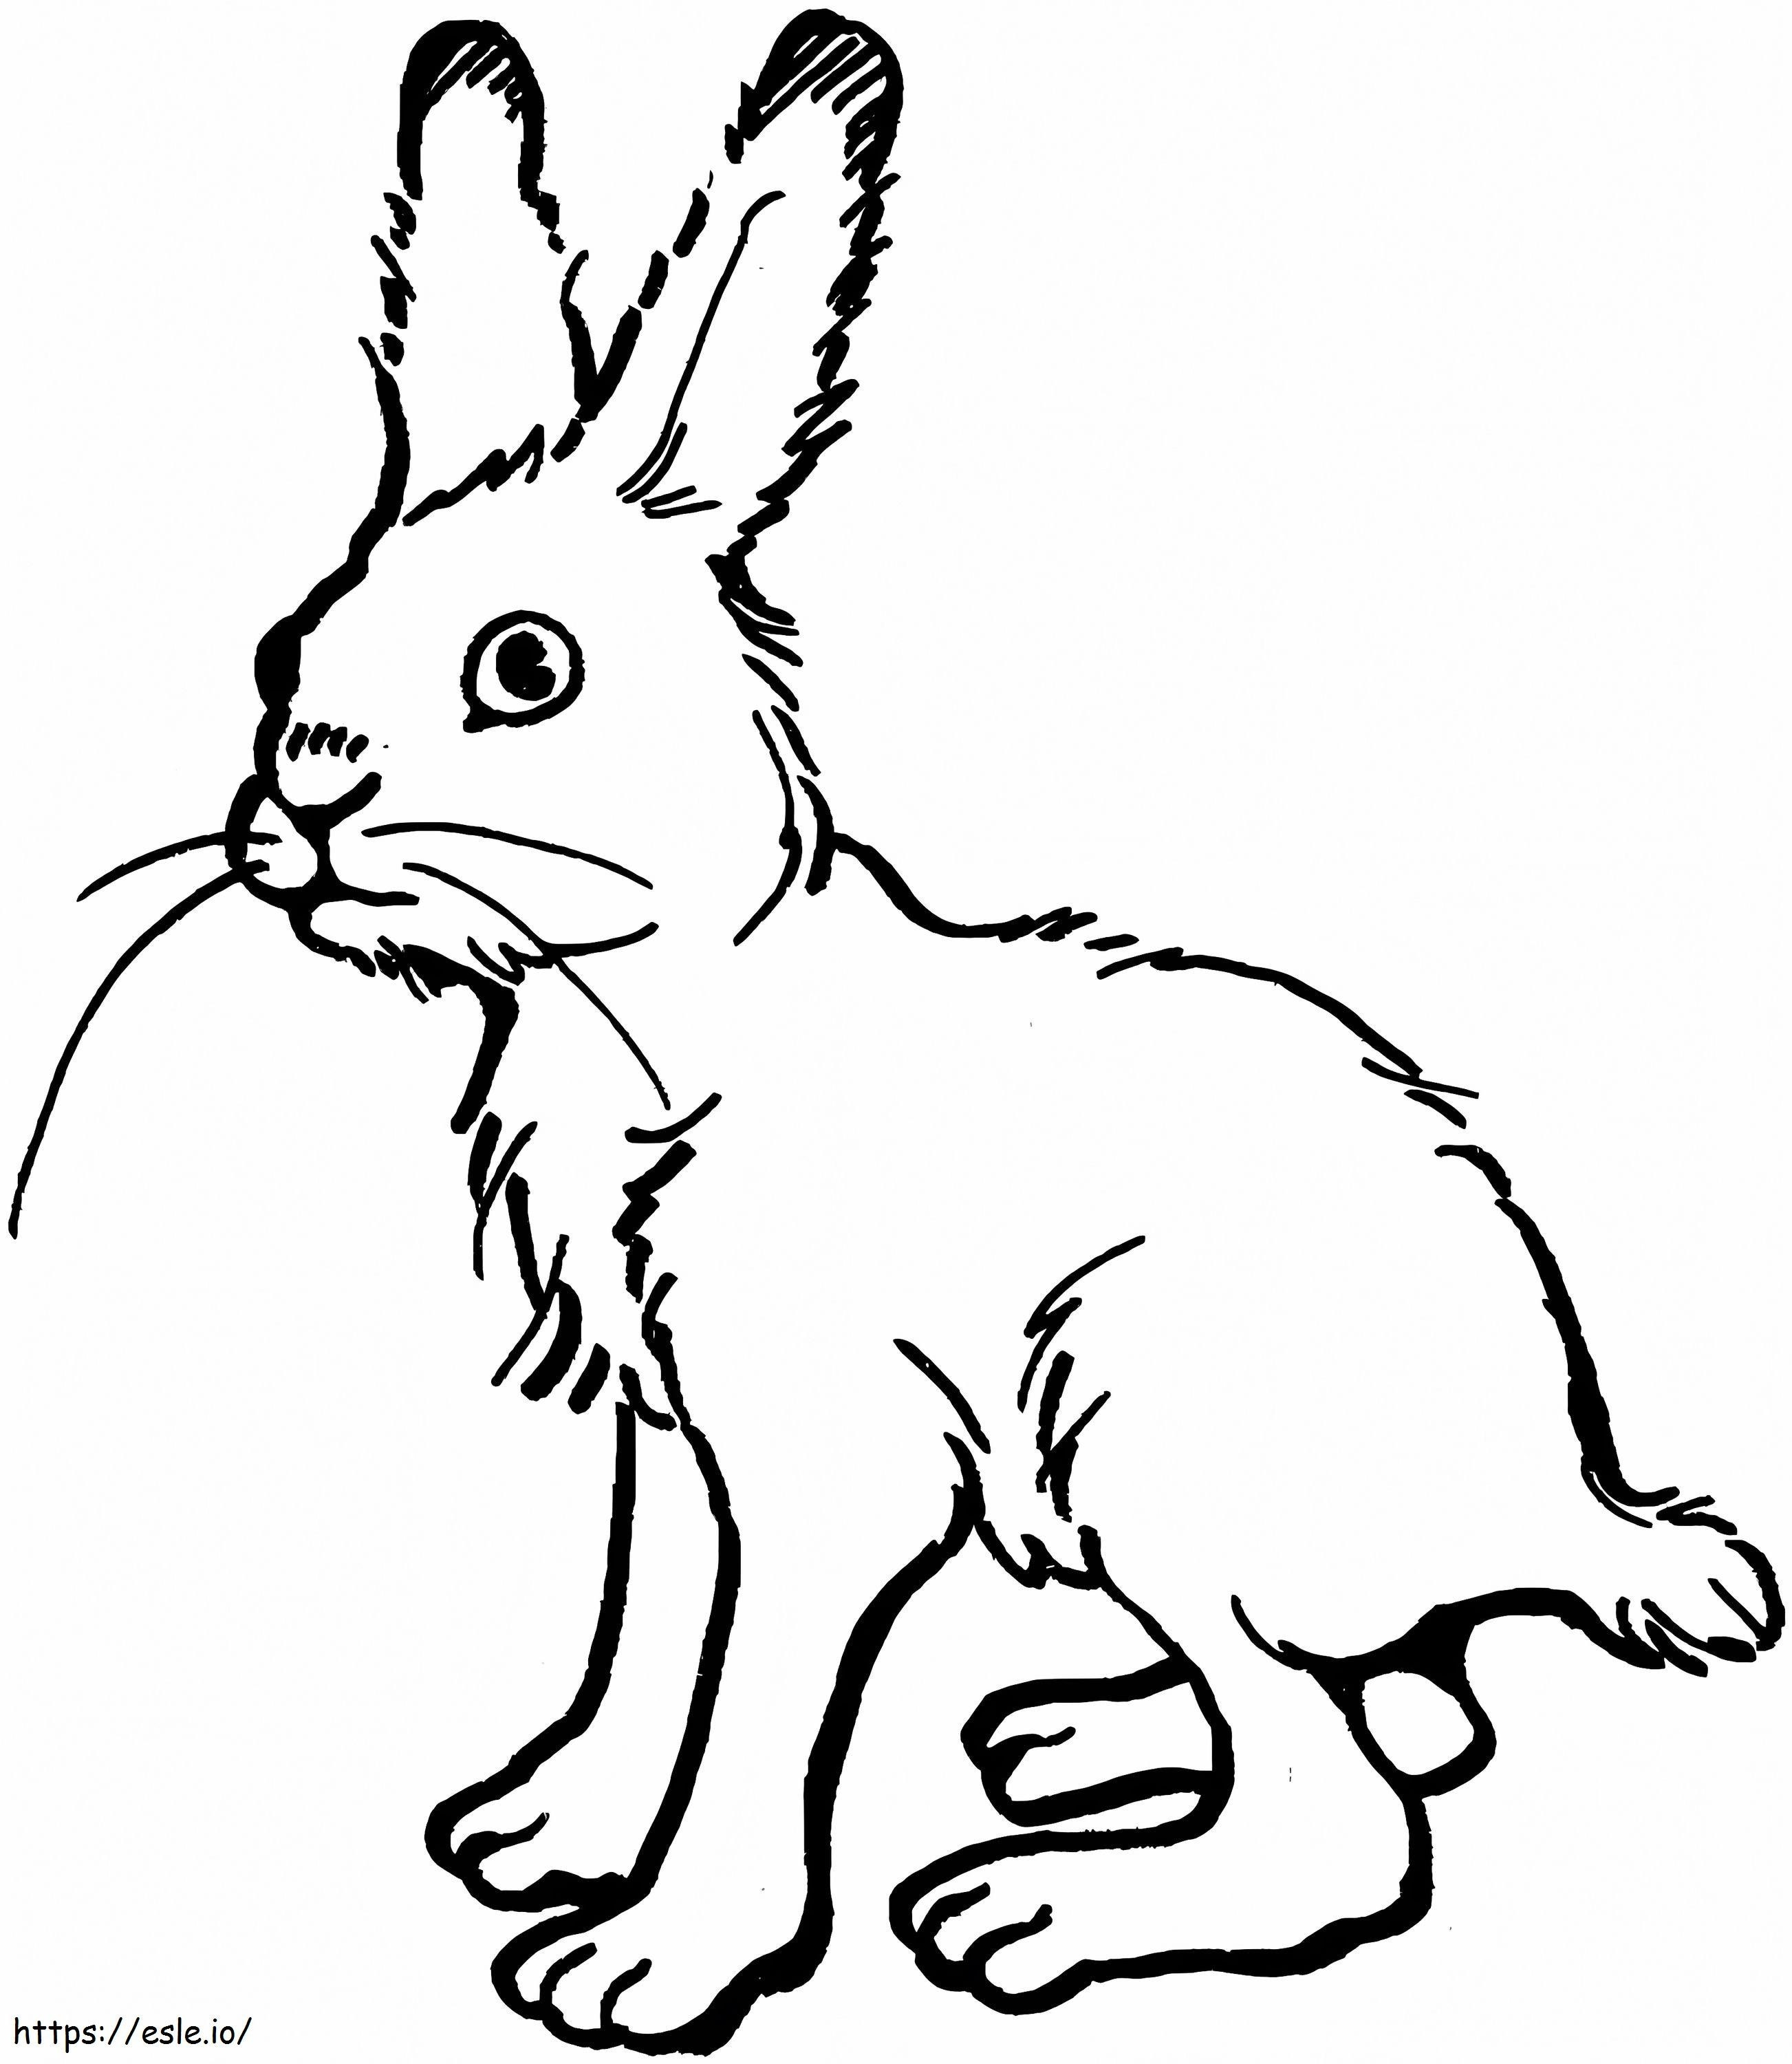 Hässliches Kaninchen ausmalbilder